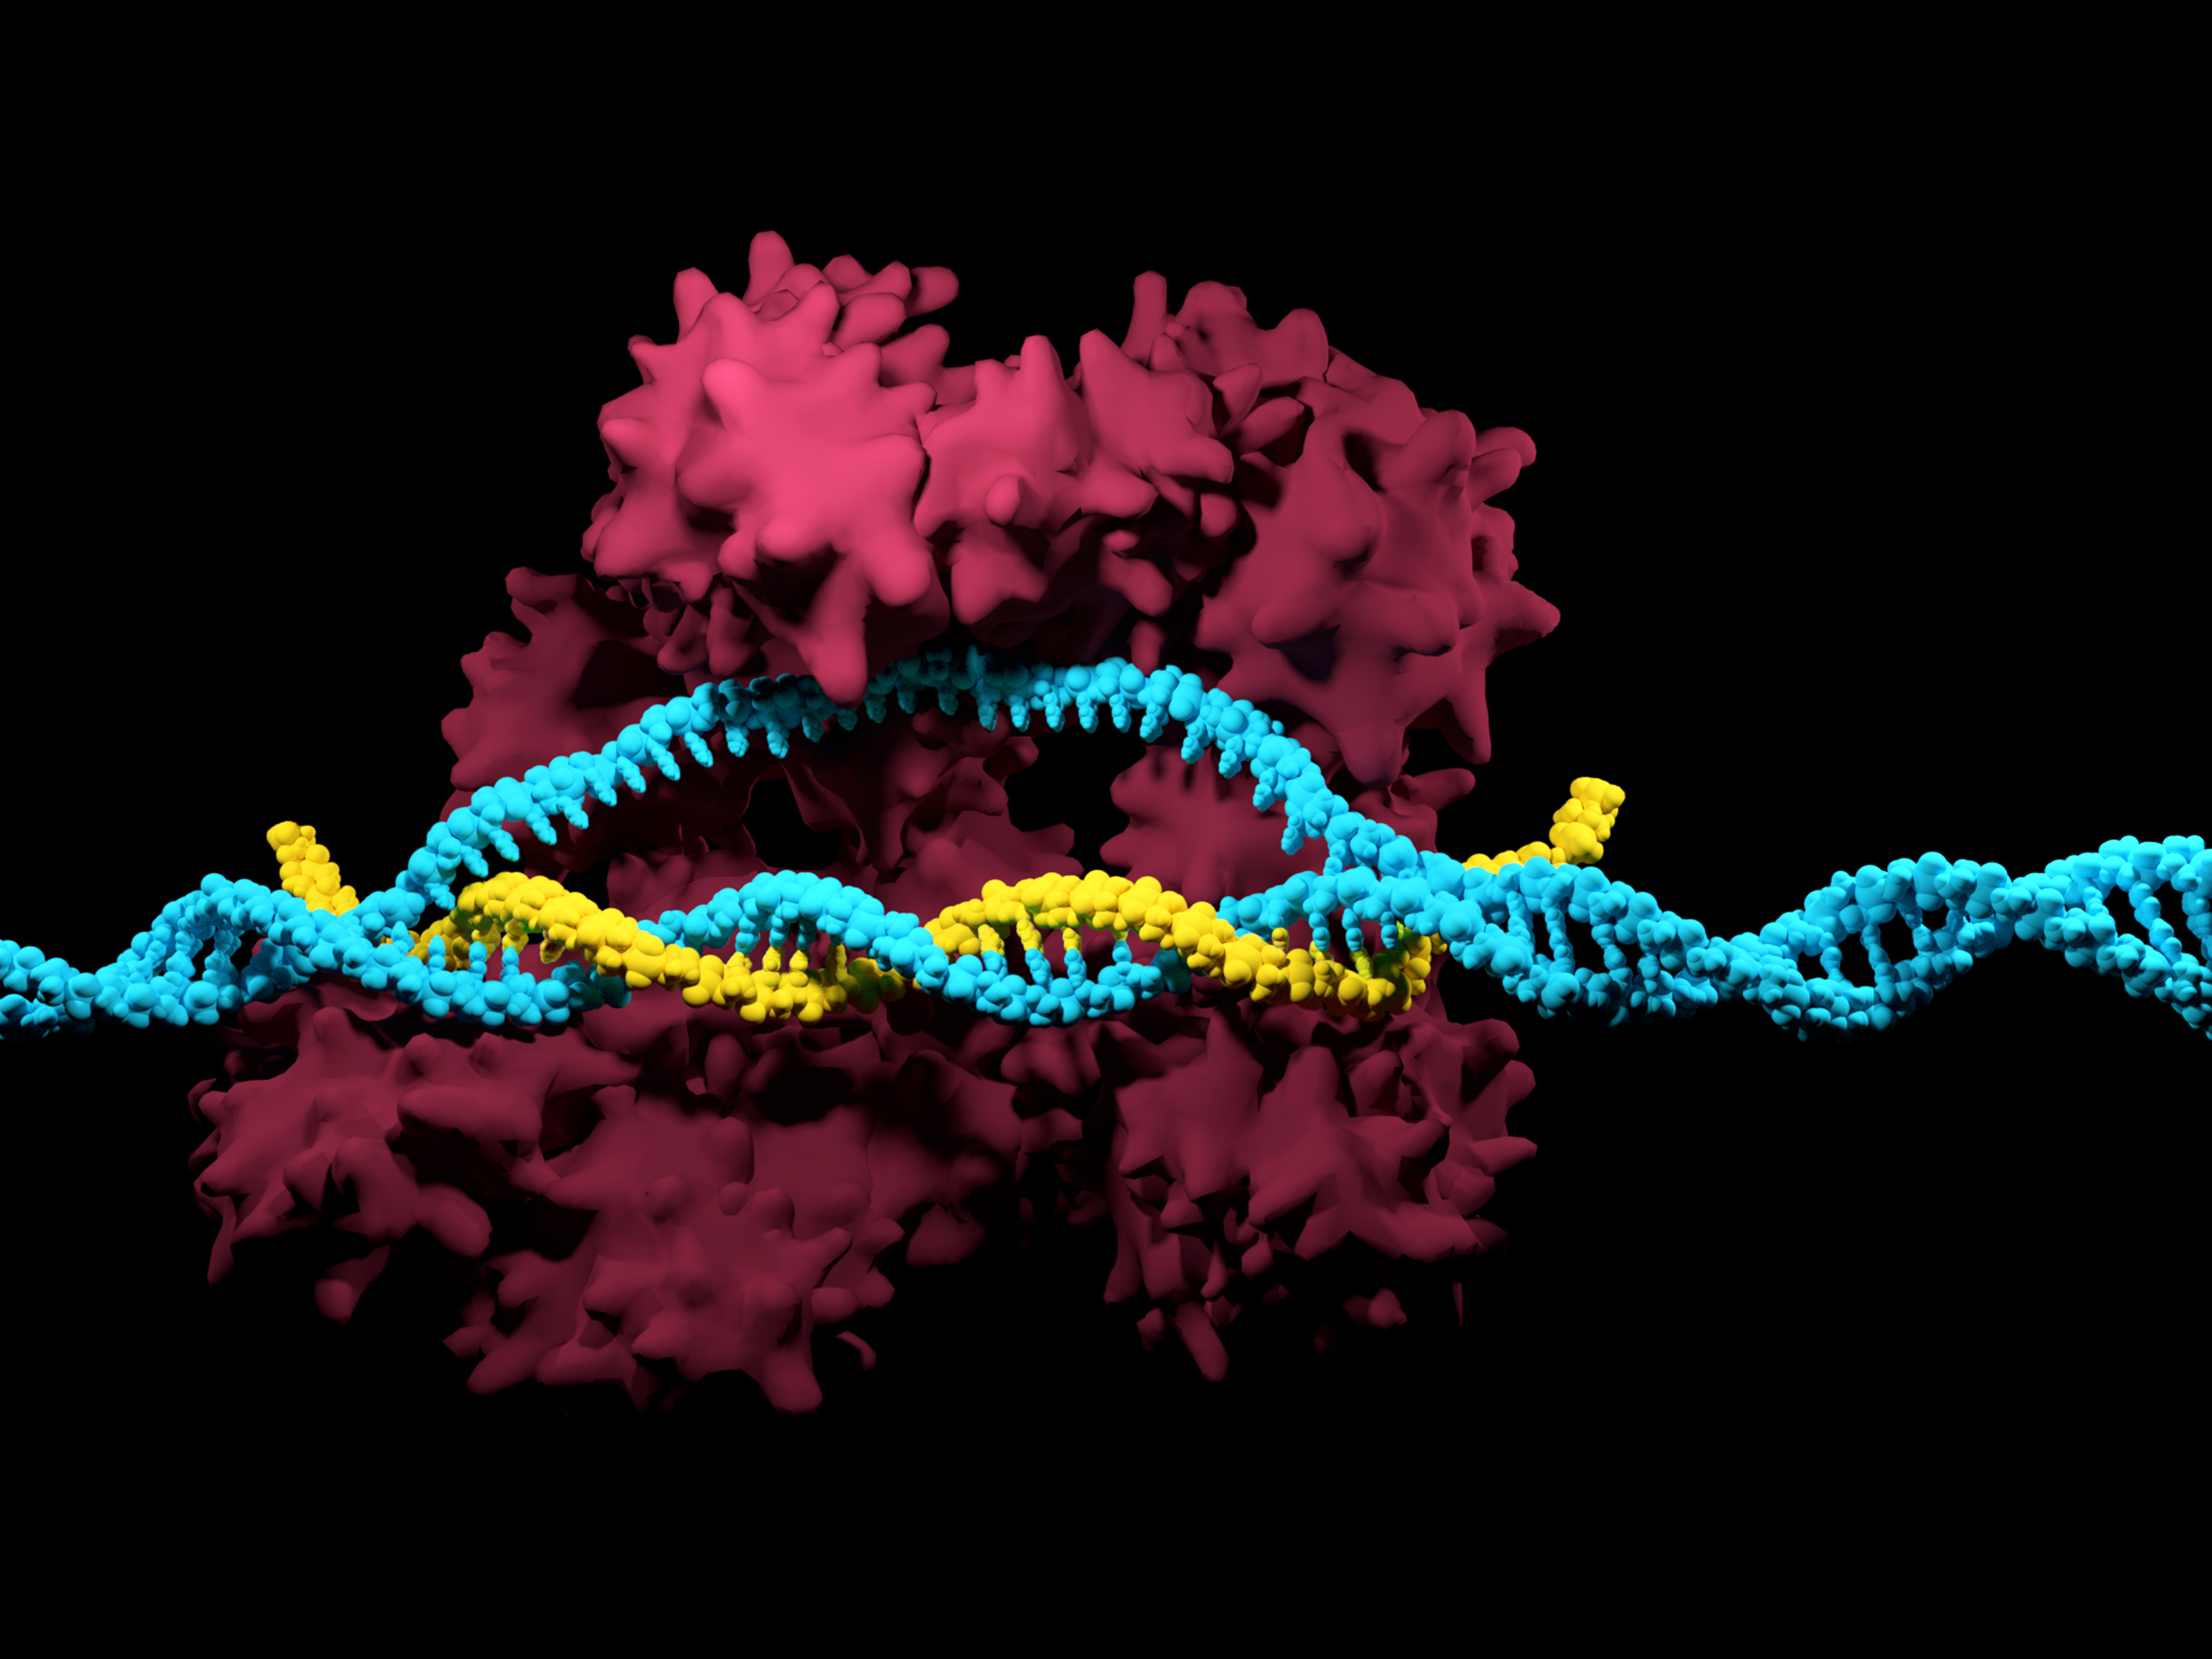 CRISPR-Cas9 system iStock-859573154.jpg